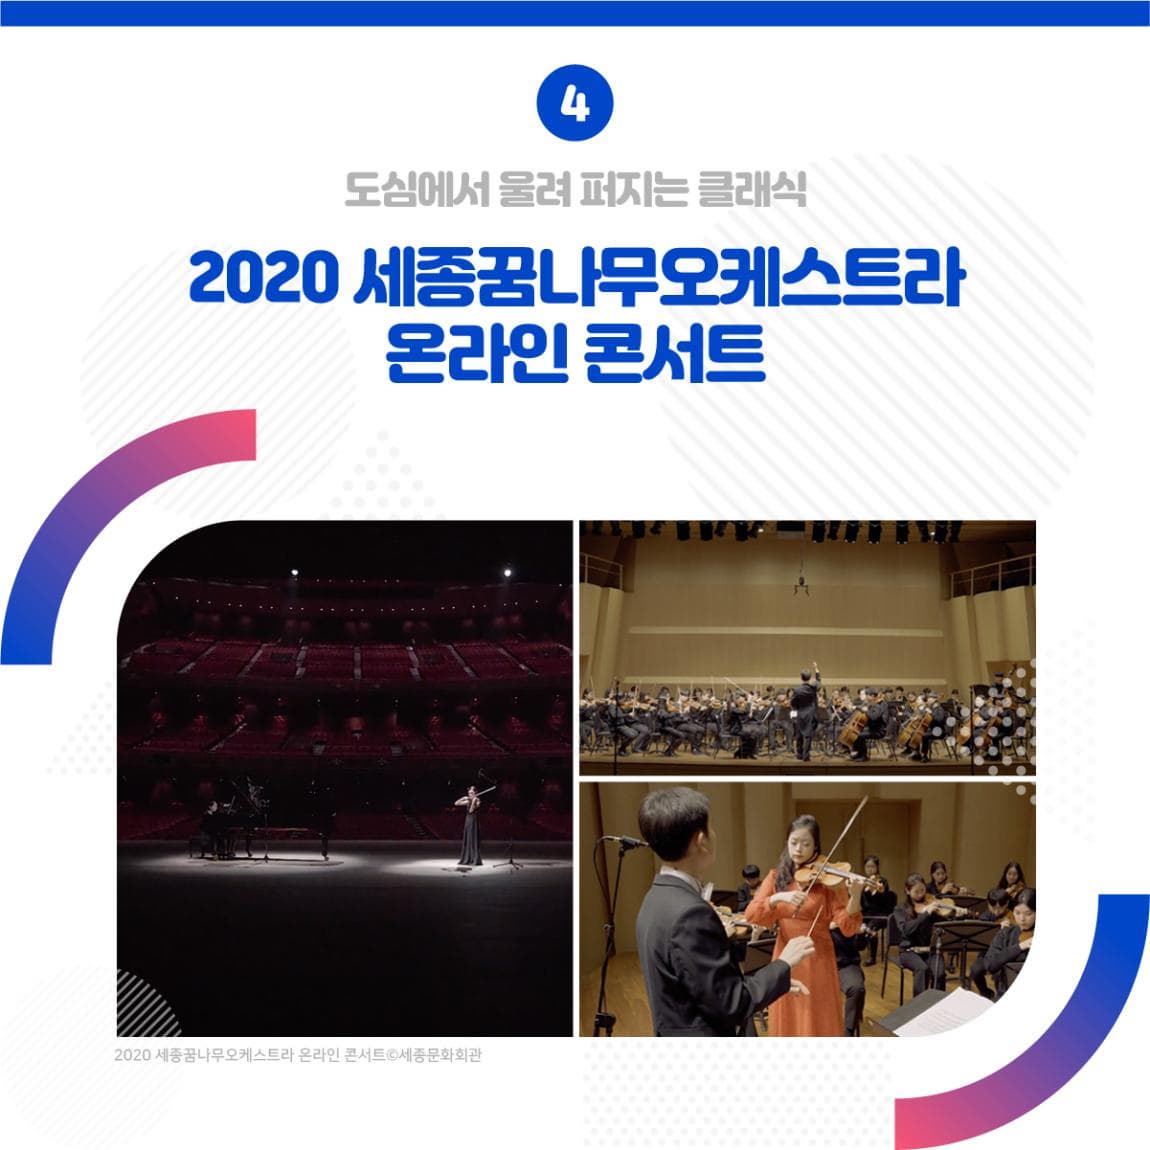 4. 도심에서 울려 퍼지는 클래식 2020 세종꿈나무오케스트라 온라인 콘서트